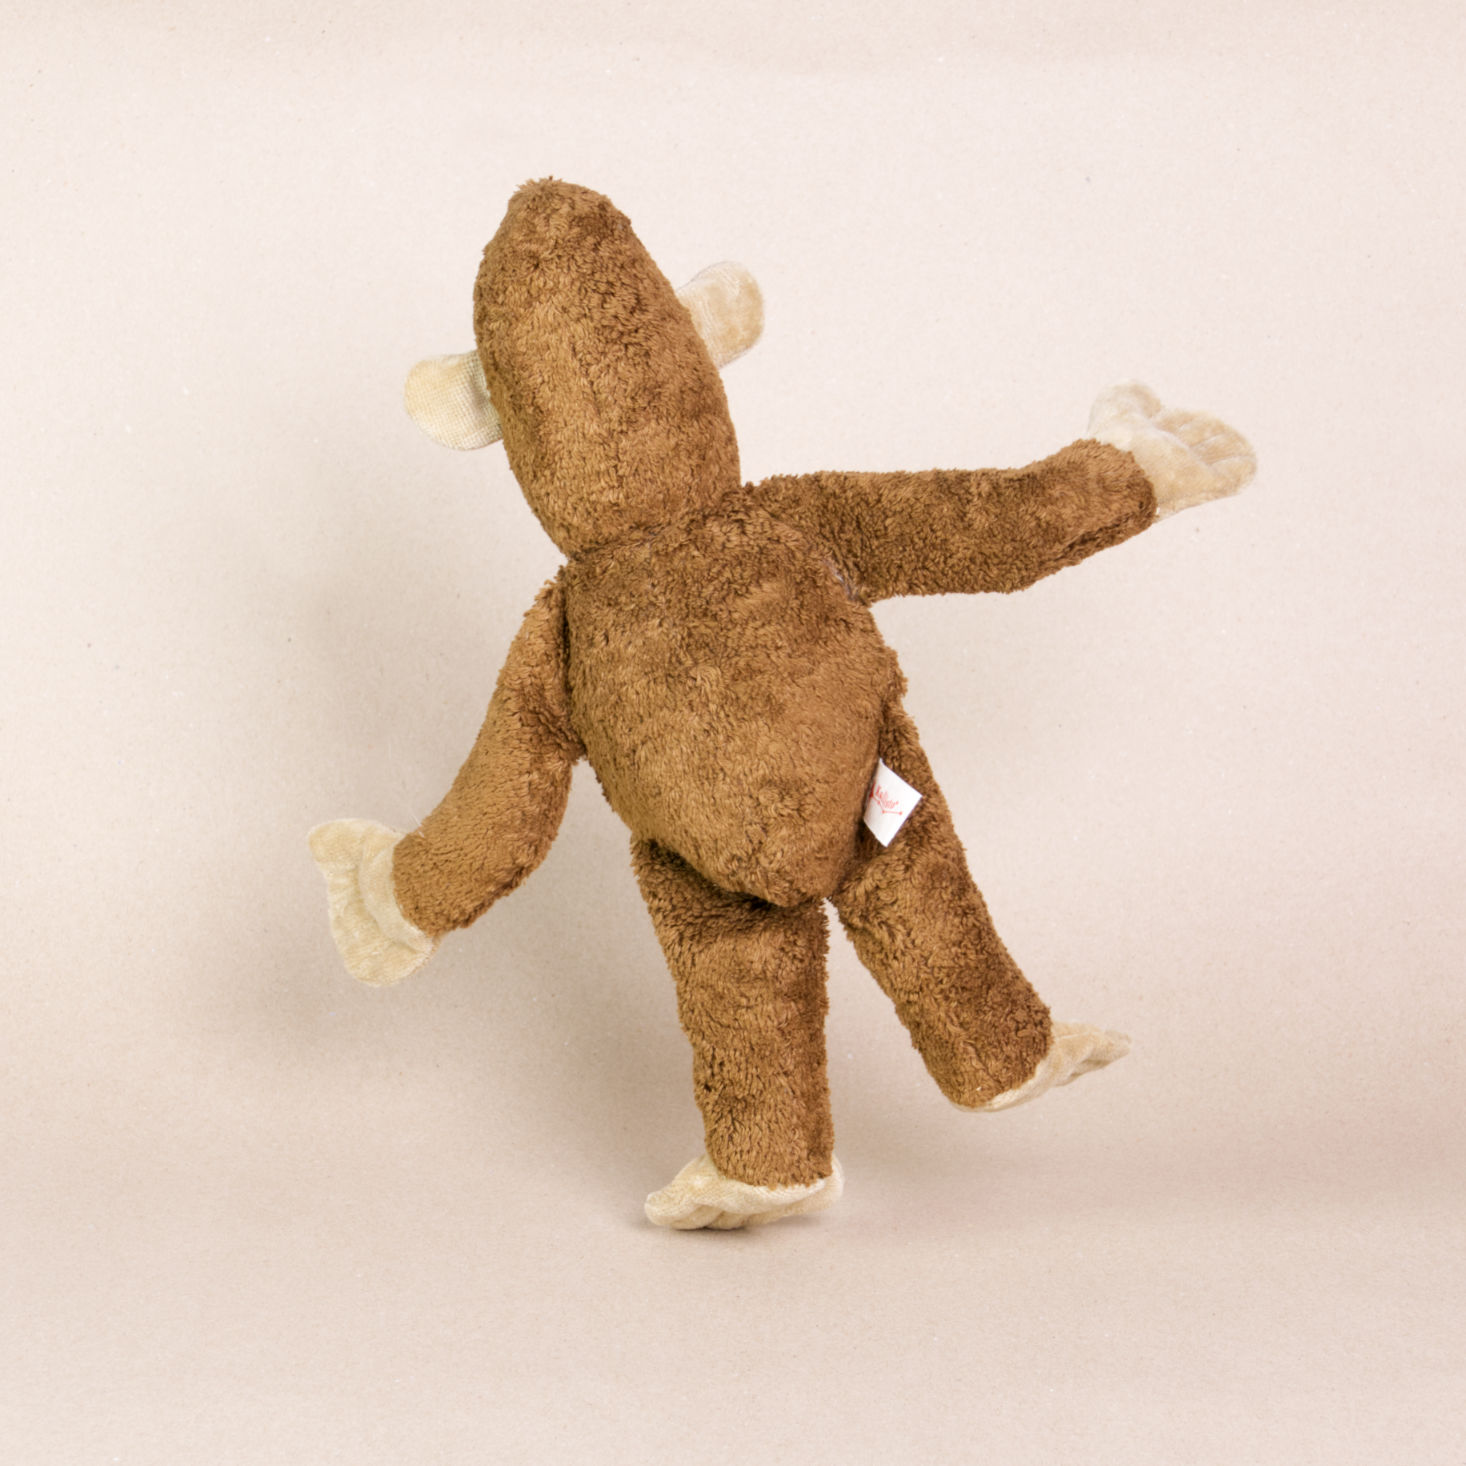 Hinteransicht des Kuscheltieres Affe namens Toto von Kallisto. Es hat braunes Plüschfell und braune Knopfaugen. Sein Körper ist leicht nach links geneigt und steht nur auf dem linken Bein.